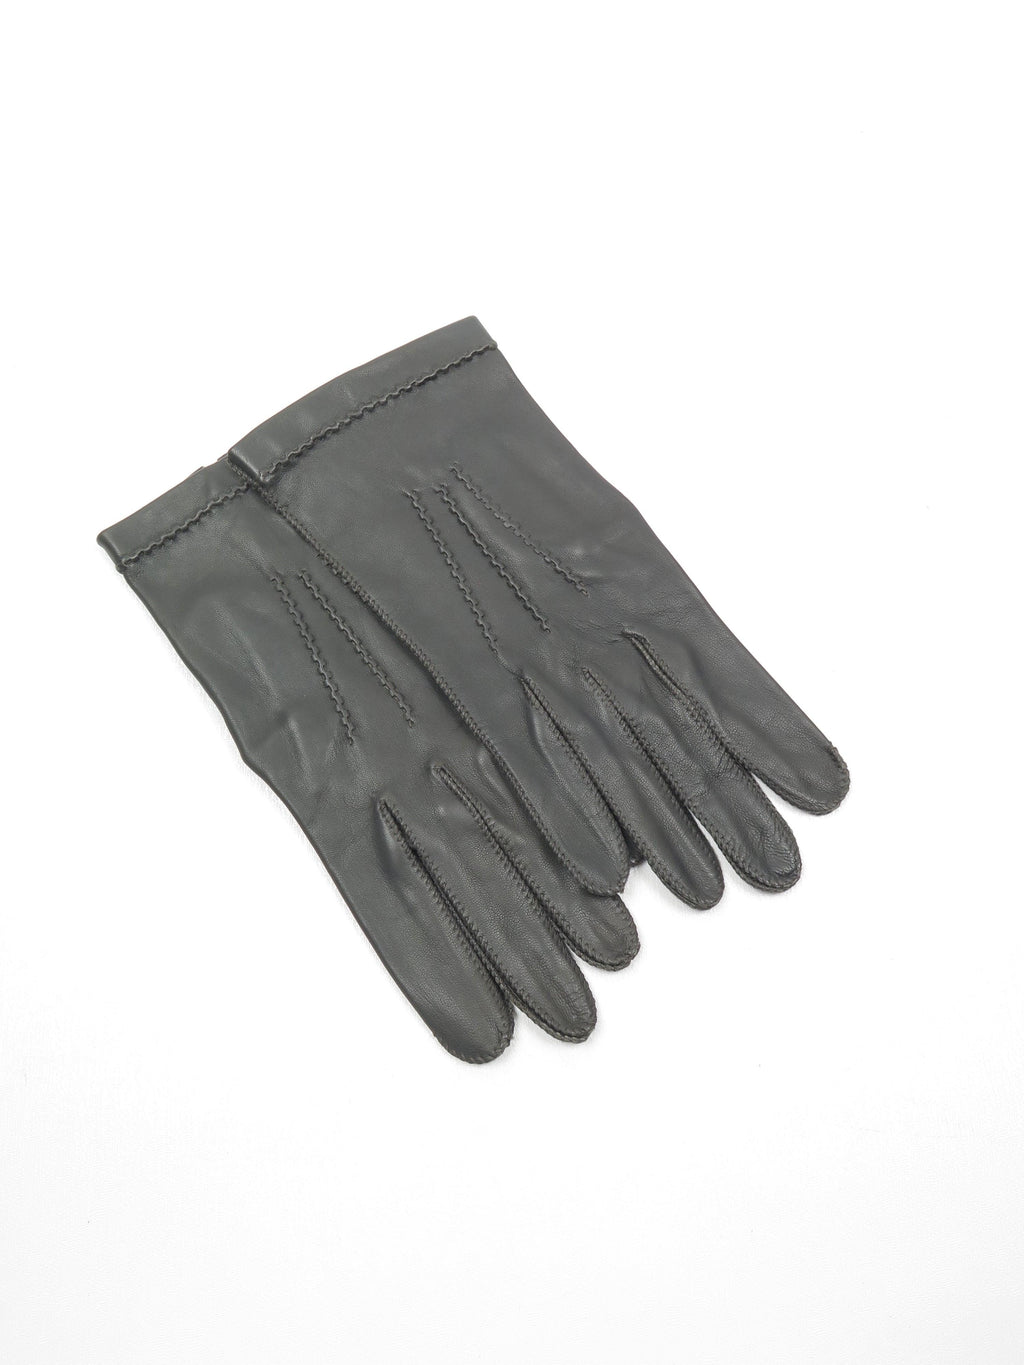 Men's Grey Leather Vintage Gloves 81/4